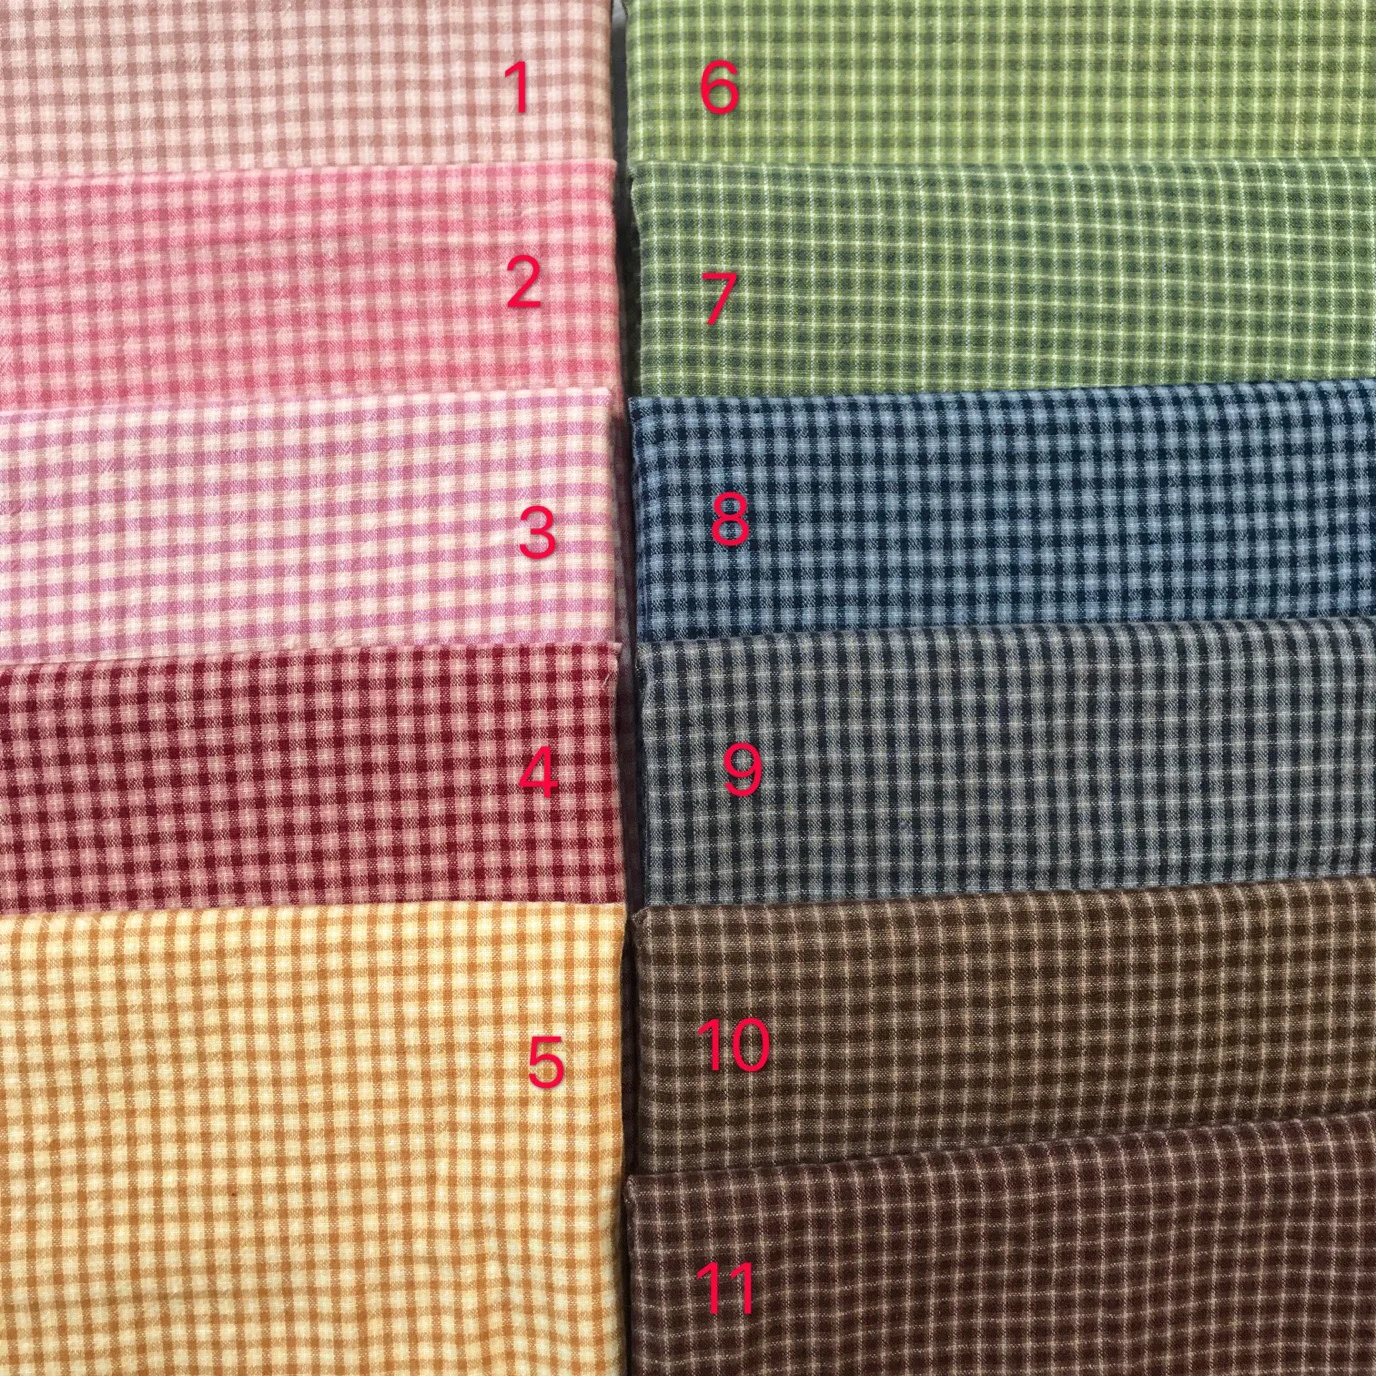 DIY Япония маленькая ткань группа окрашенная пряжа ткань, для шитья ручная работа пэтчворк стеганая сетка полоса точка случайный 1 стиль/Лот 50*70 см